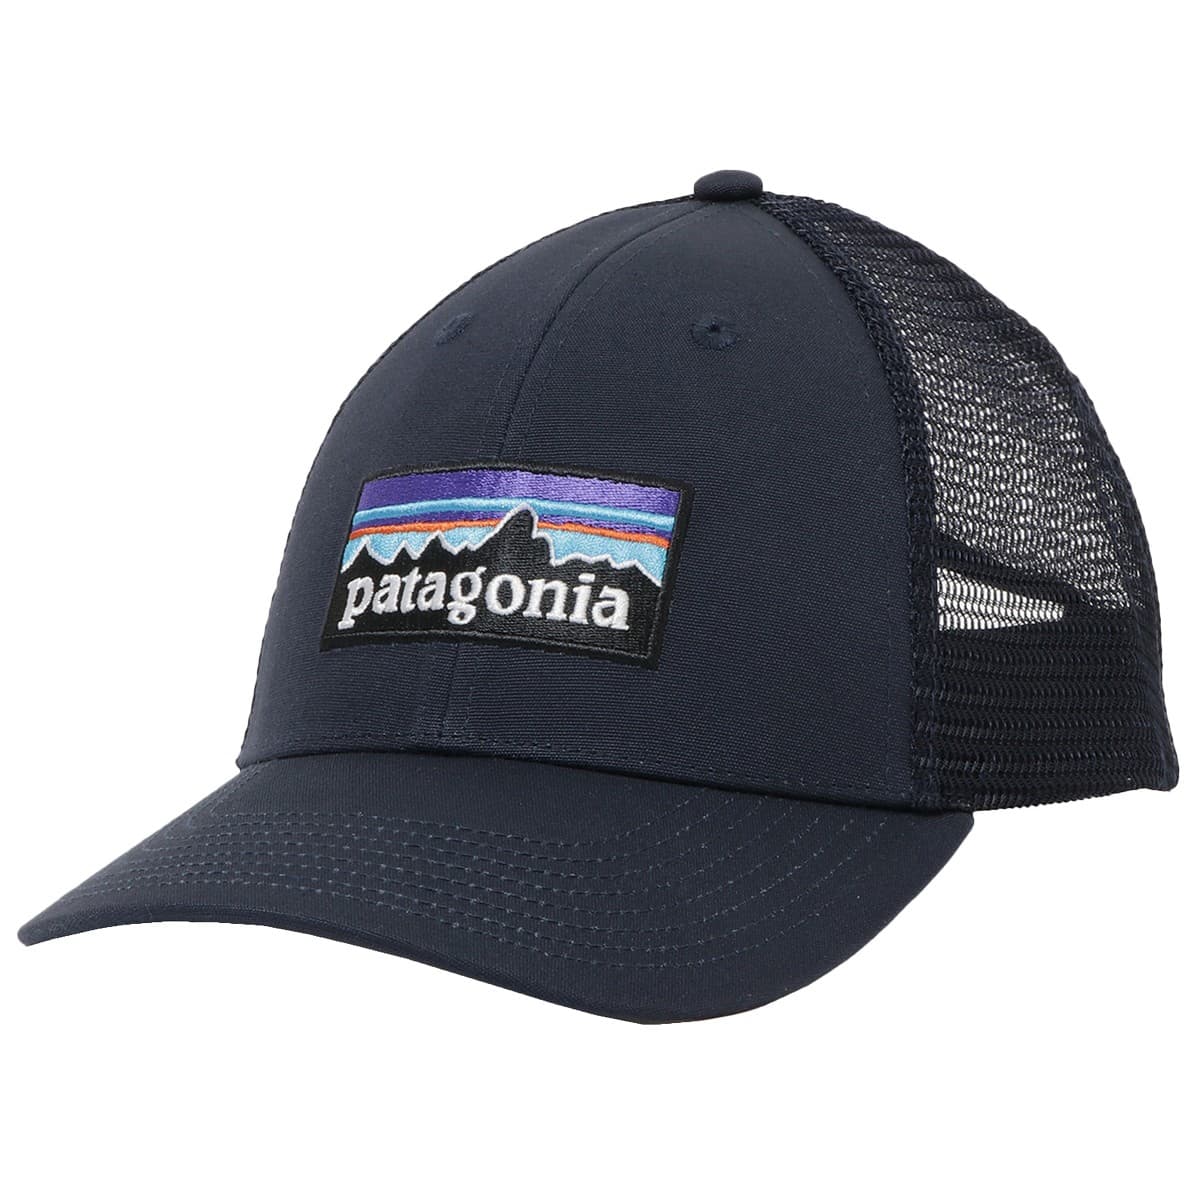 パタゴニア 帽子 キャップ PATAGONIA メンズ ユニセックス P-6ロゴ ロープロ トラッカー ハット ネイビーブルー メッシュ ベースボールキャップ 38283-NVYB